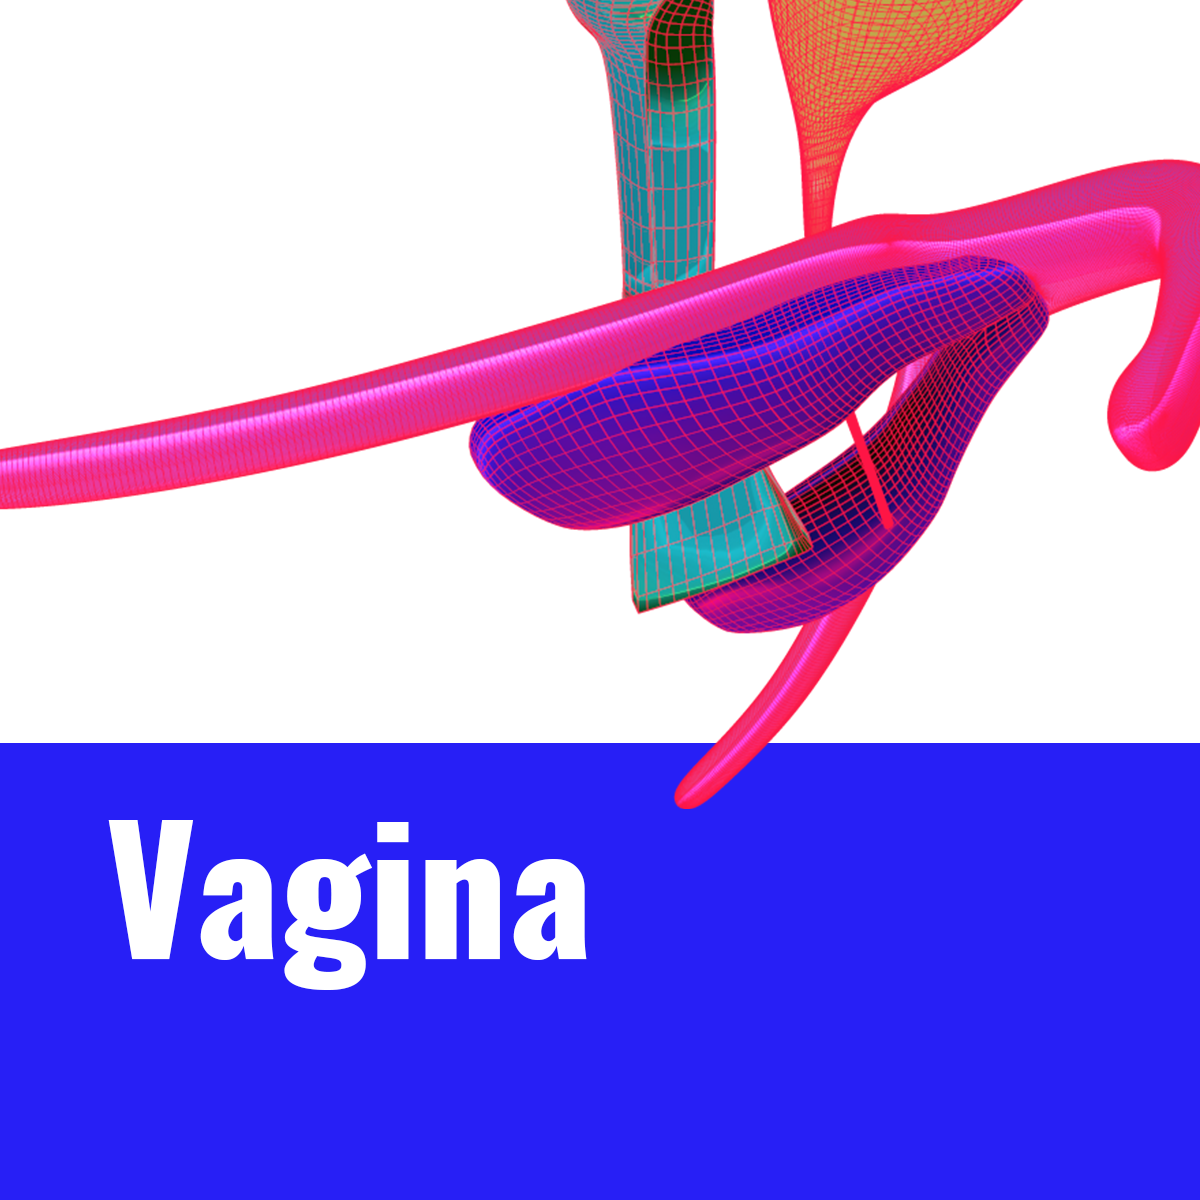 3 Vagina thumbnail v2.png